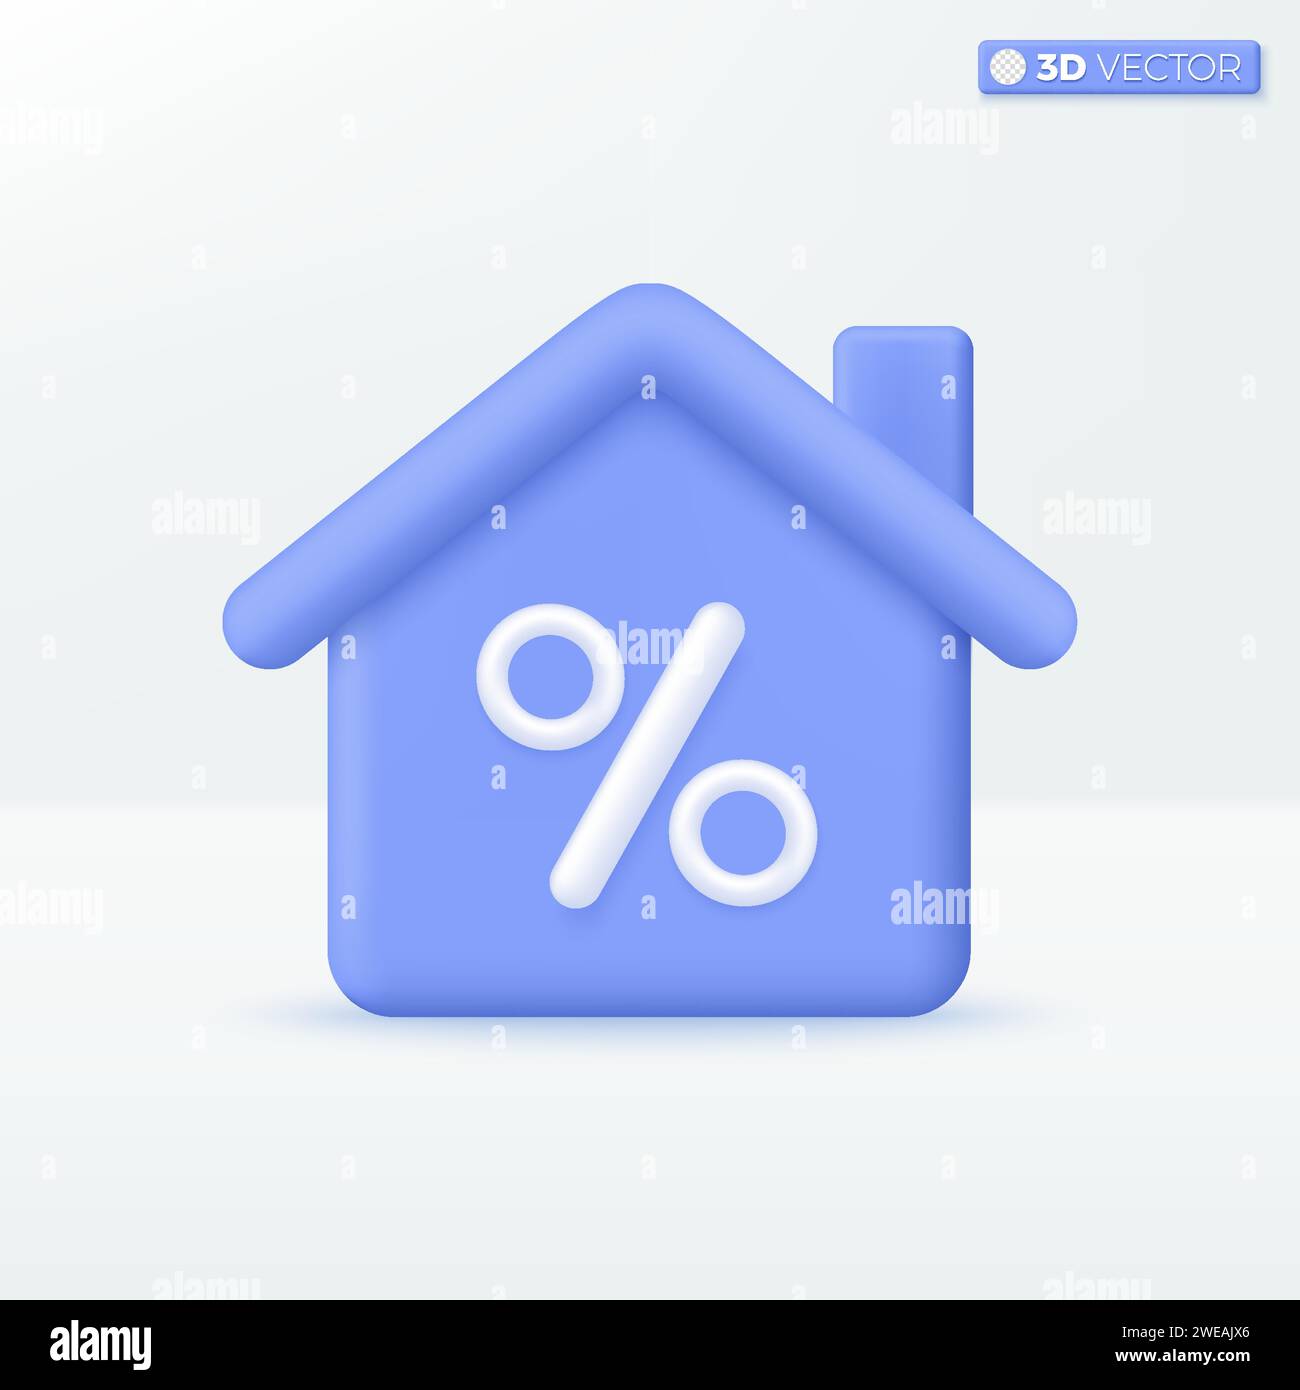 Icona 3d House (Casa 3d) e percent symbol (percentuale). Smart Home alla moda, immobiliare, prestito, mutuo, concetto di back. Progettazione di illustrazioni isolate vettoriali 3D. iso vettoriale 3D. Illustrazione Vettoriale